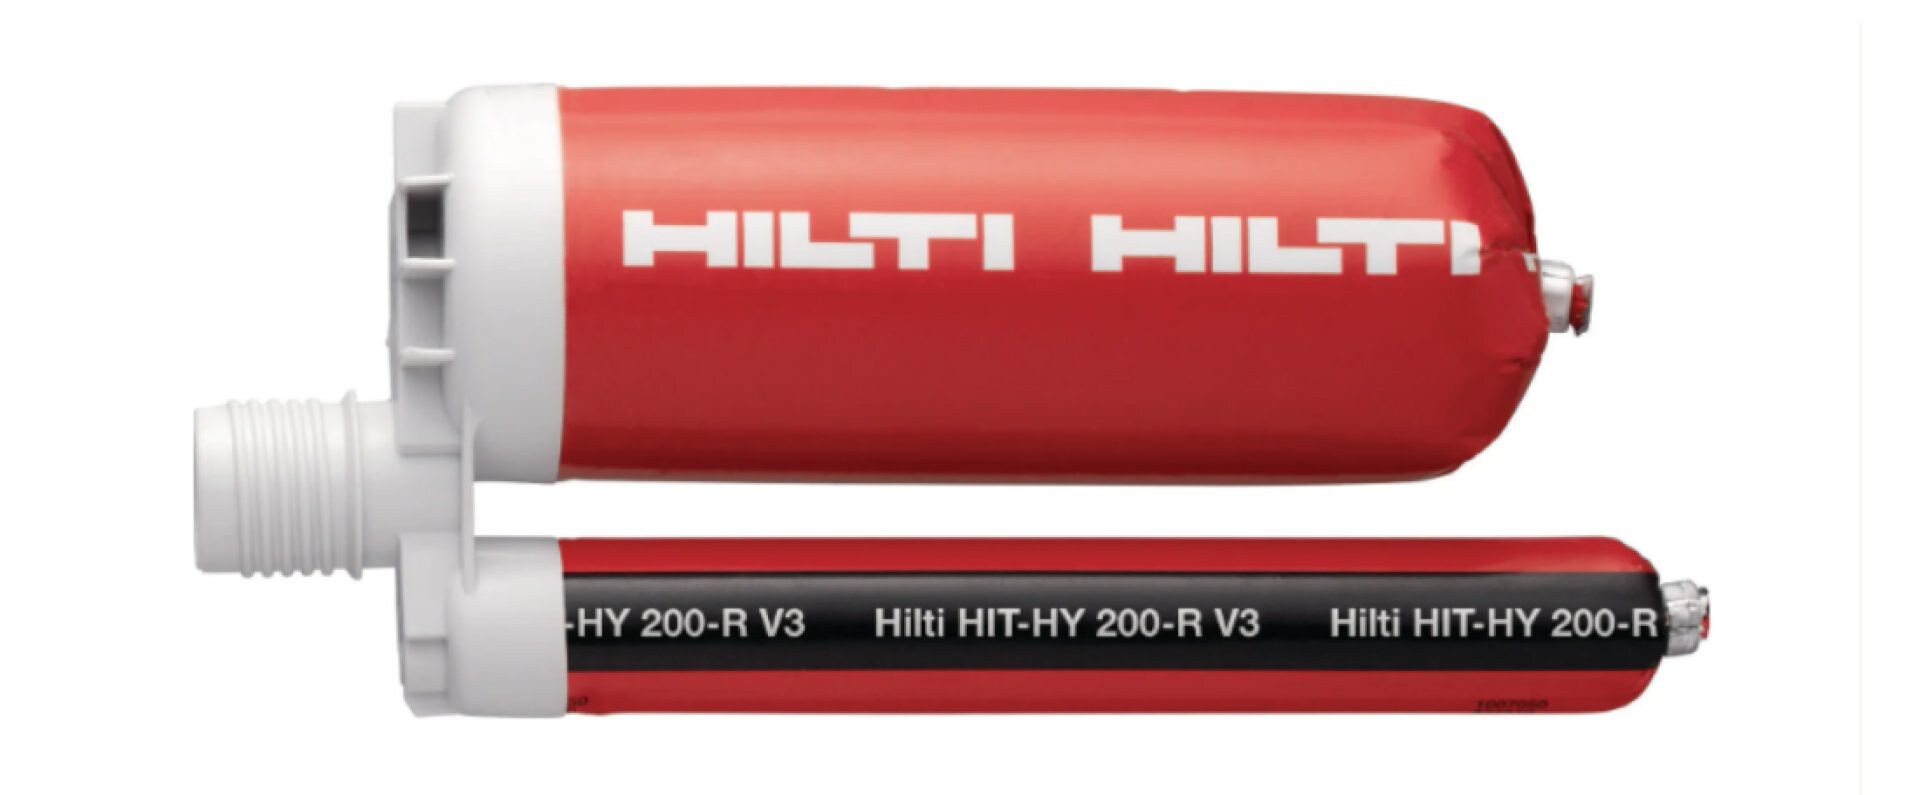 Résine hybride haute performance HIT-HY 200-A pour chevillage lourd et scellement de fers d'armature dans le cadre du système Hilti SafeSet